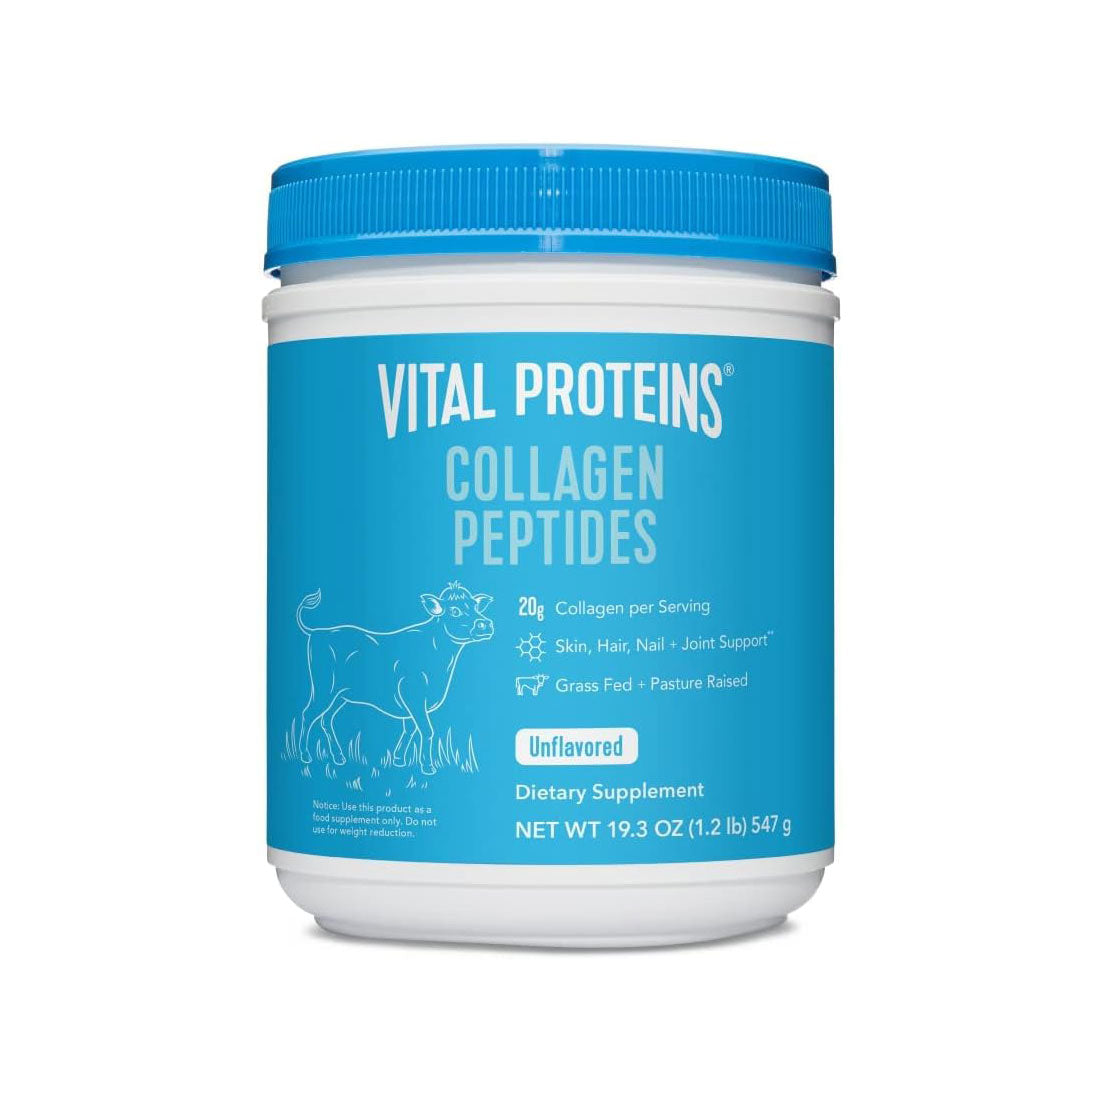 Vital Proteins Collagen Peptides unflavored powder